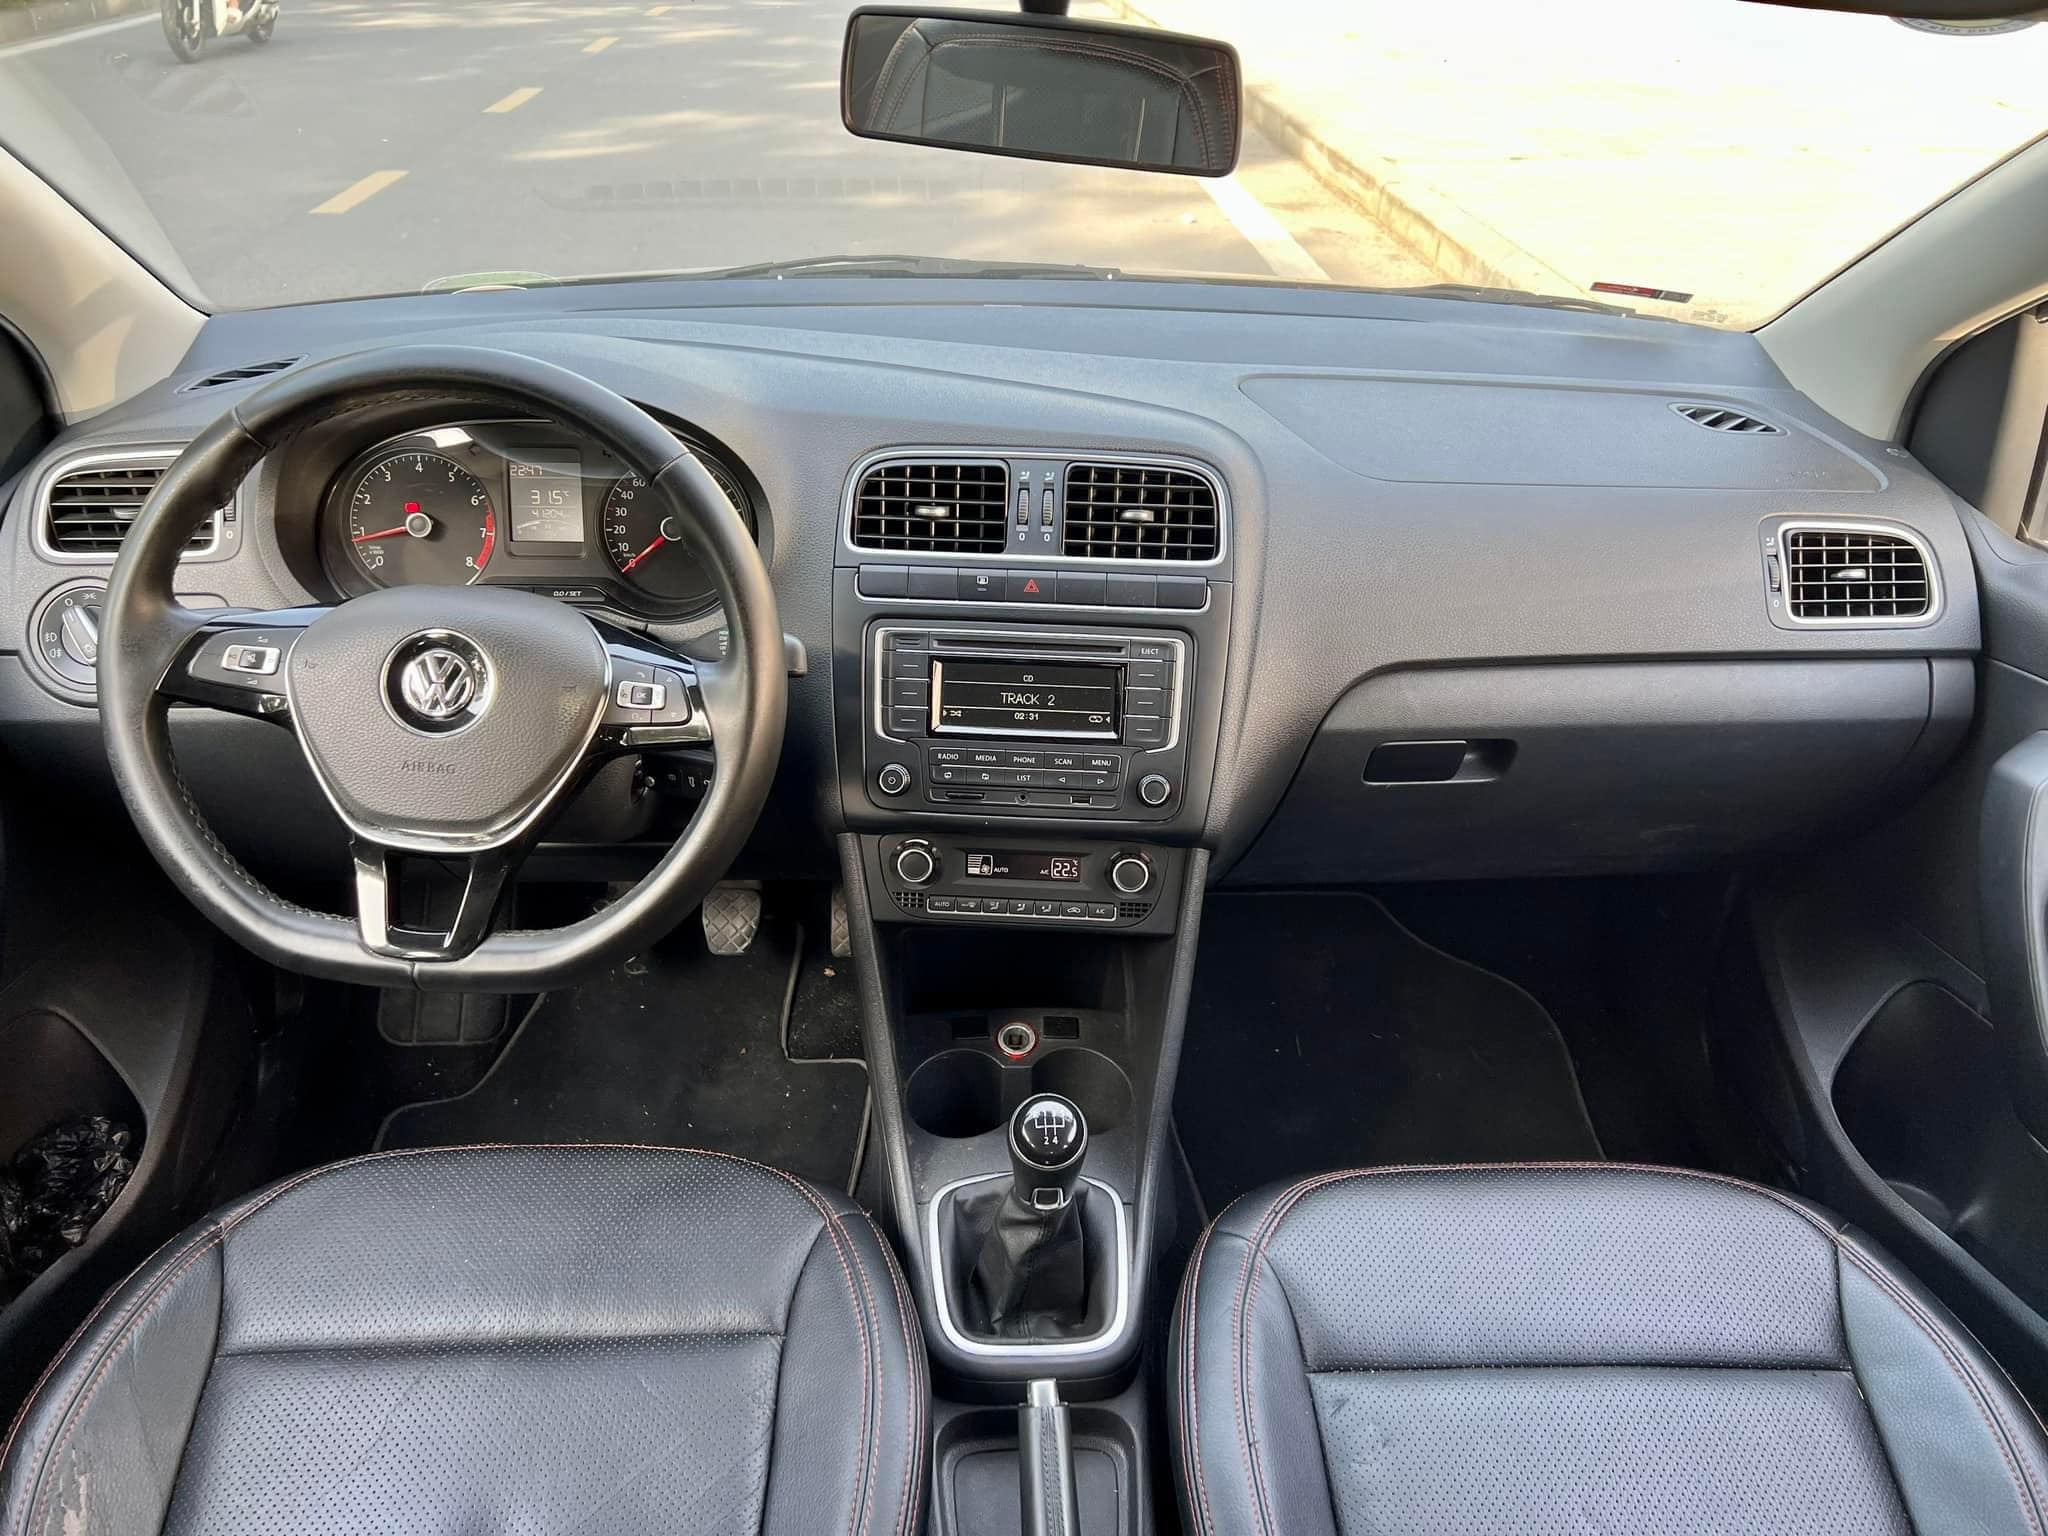 Volkswagen Polo 2017 giá bao nhiêu thiết kế nội ngoại thất  vận hành   Danhgiaxe